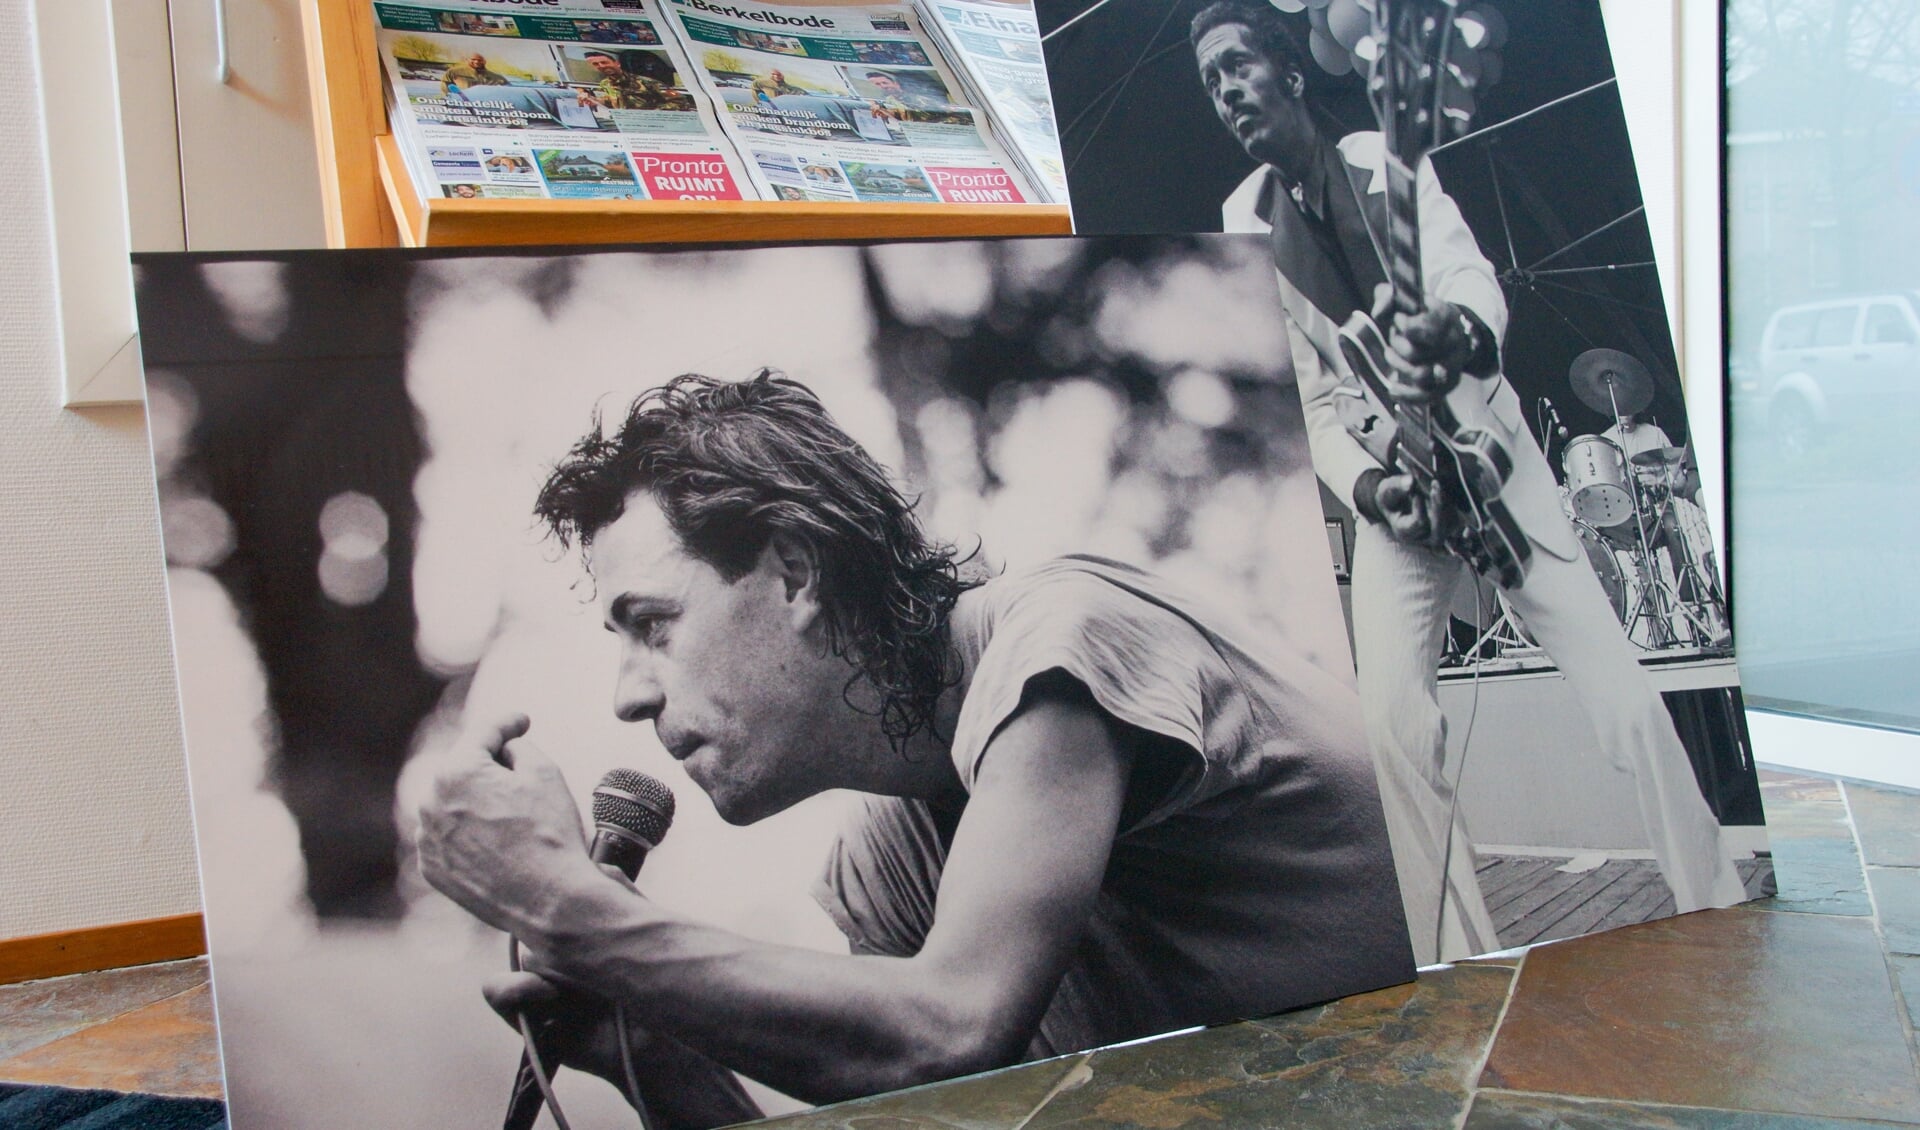 Foto's van muzikale helden als Bob Geldof en Chuck Berry zullen geëxposeerd worden in etalages van Lochemse ondernemers. De foto van Bob Geldof is gemaakt door Sander Veeneman, die van Chuck Berry door Kees Tabak. Foto: Anouk Kots